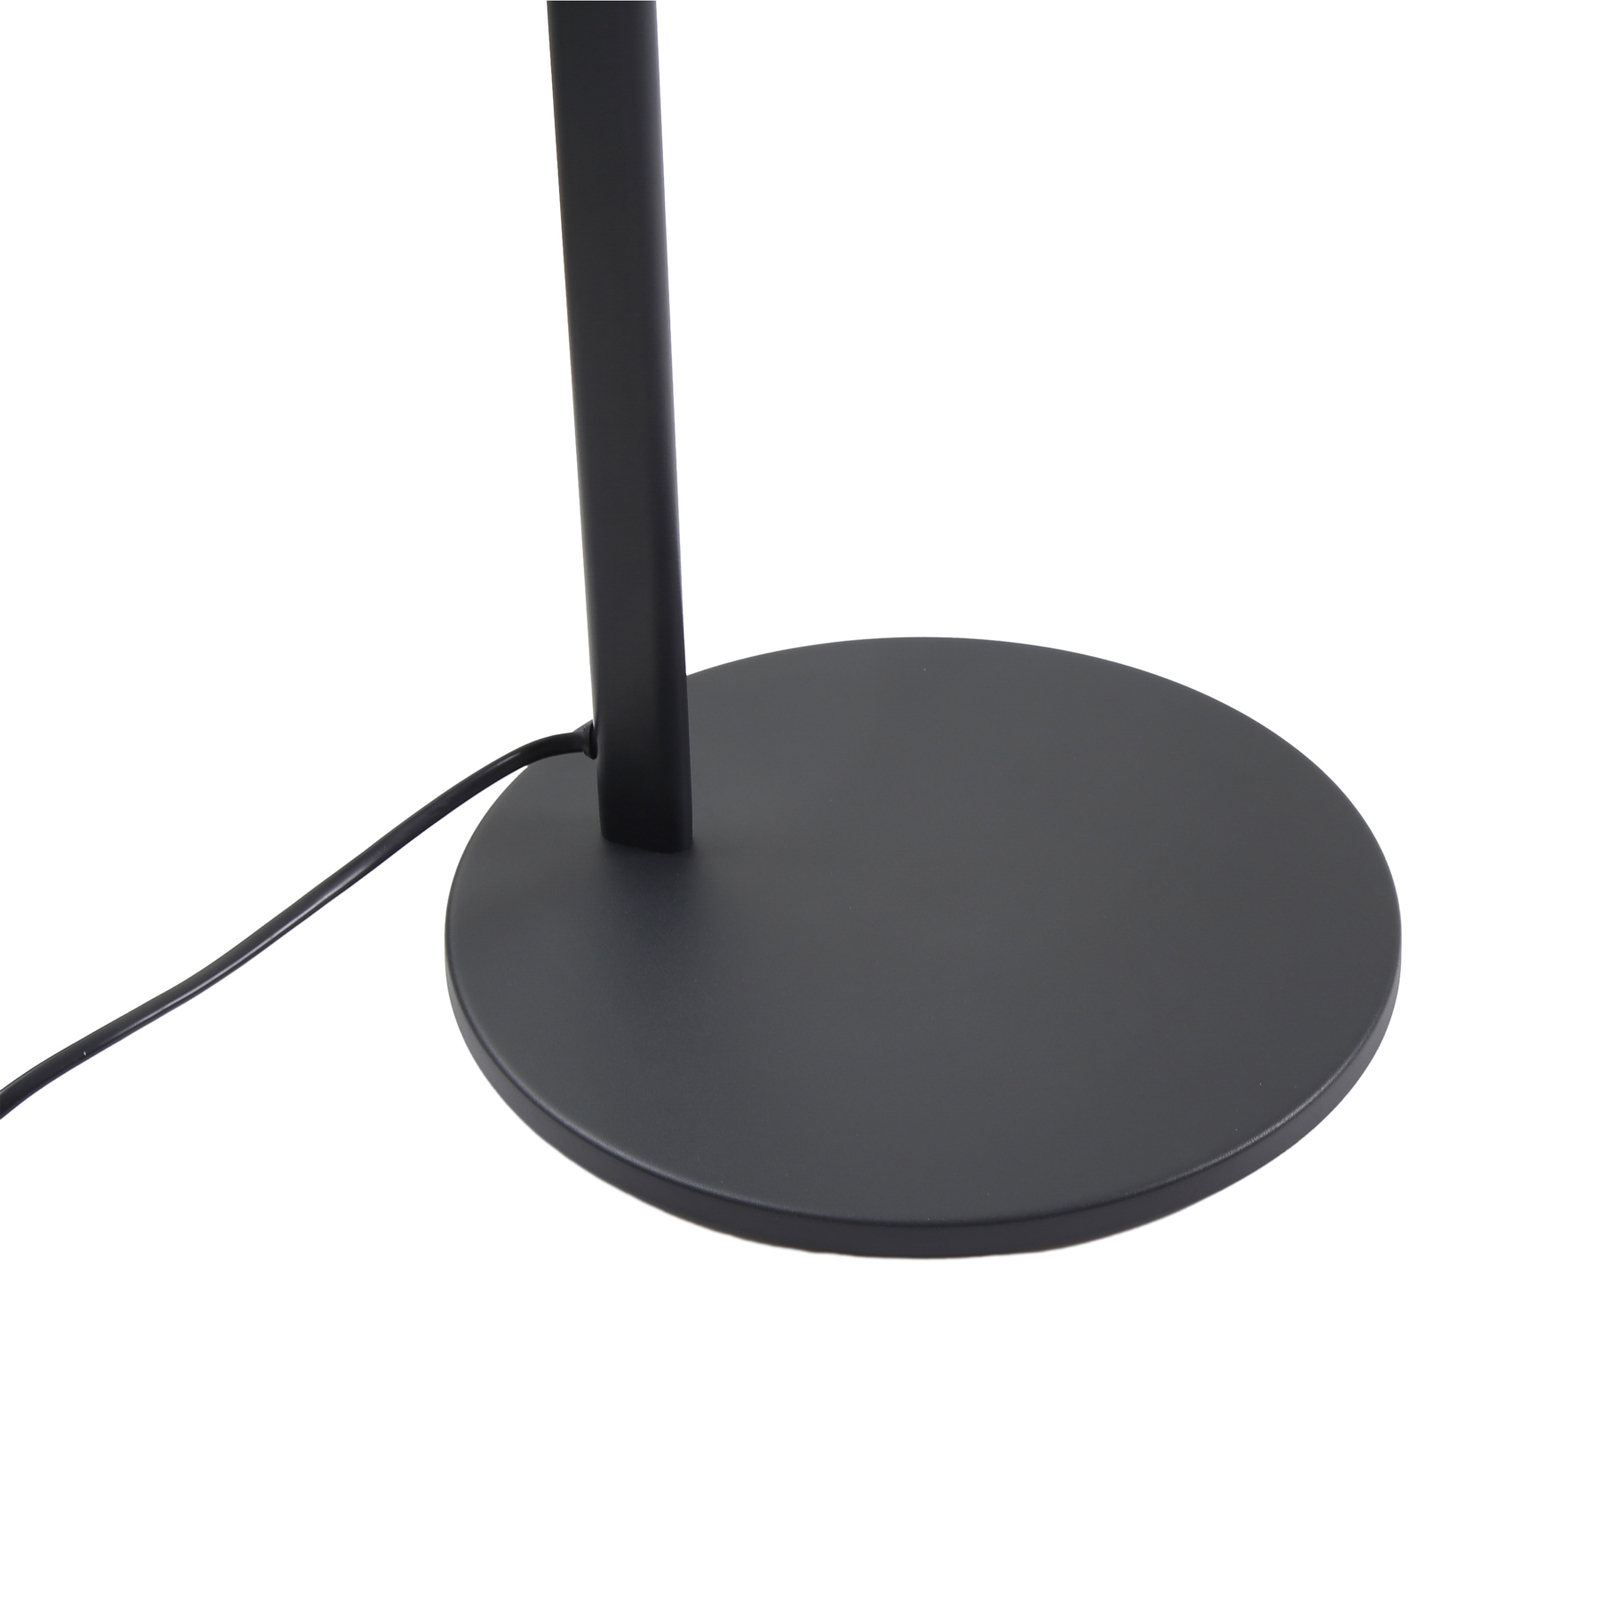 Lucande Silka φωτιστικό δαπέδου, ύψος 173 cm, ρυθμιζόμενο, μαύρο